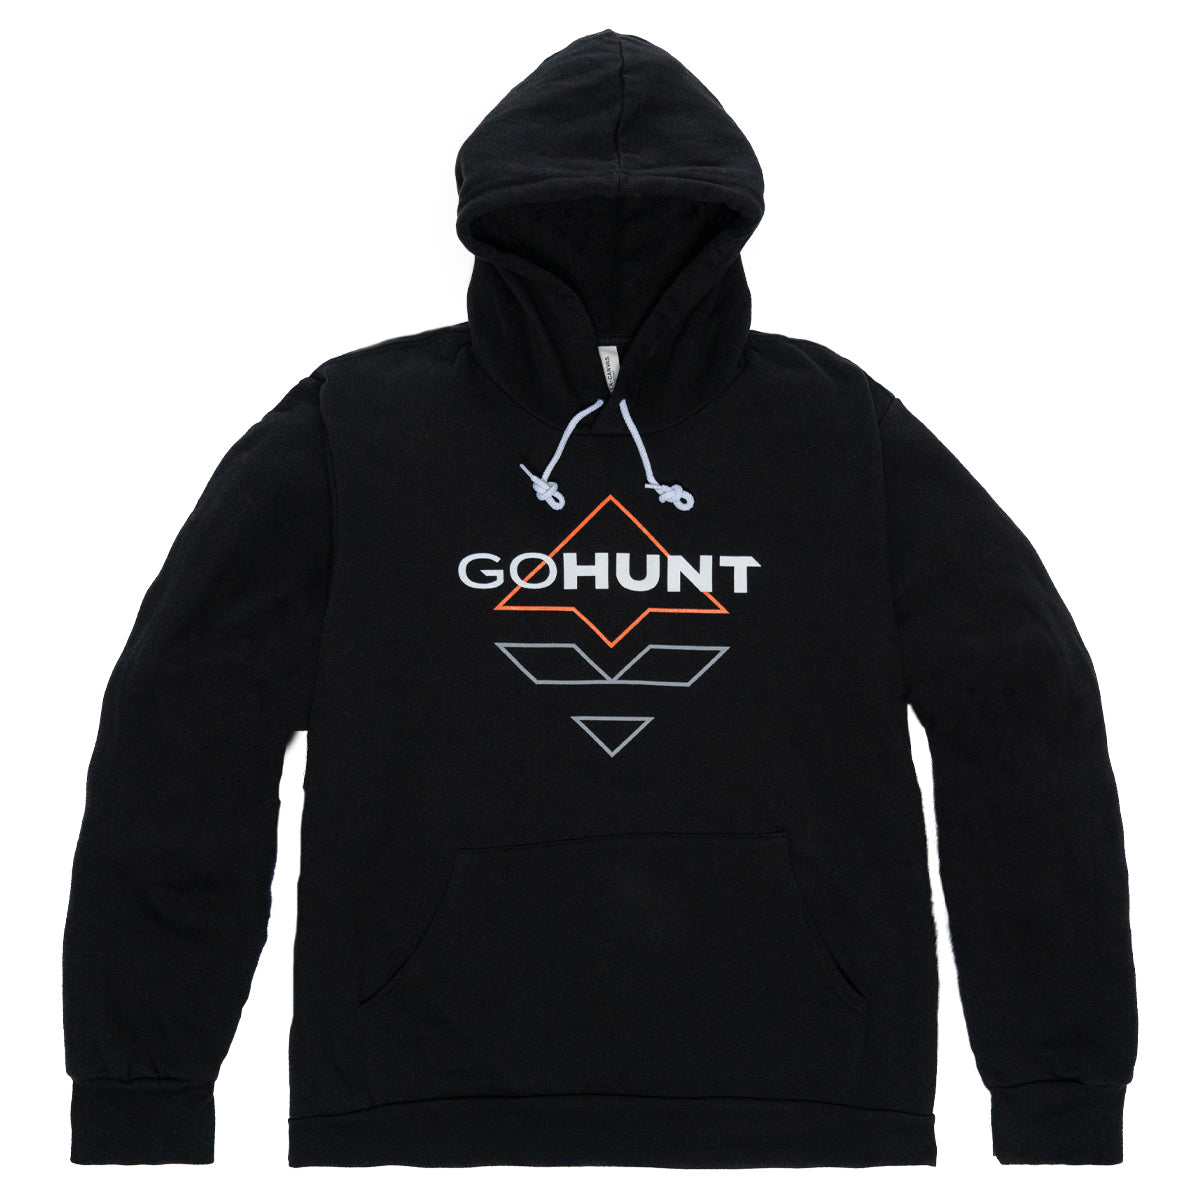 GOHUNT Logo Hoodie in Black by GOHUNT | GOHUNT - GOHUNT Shop